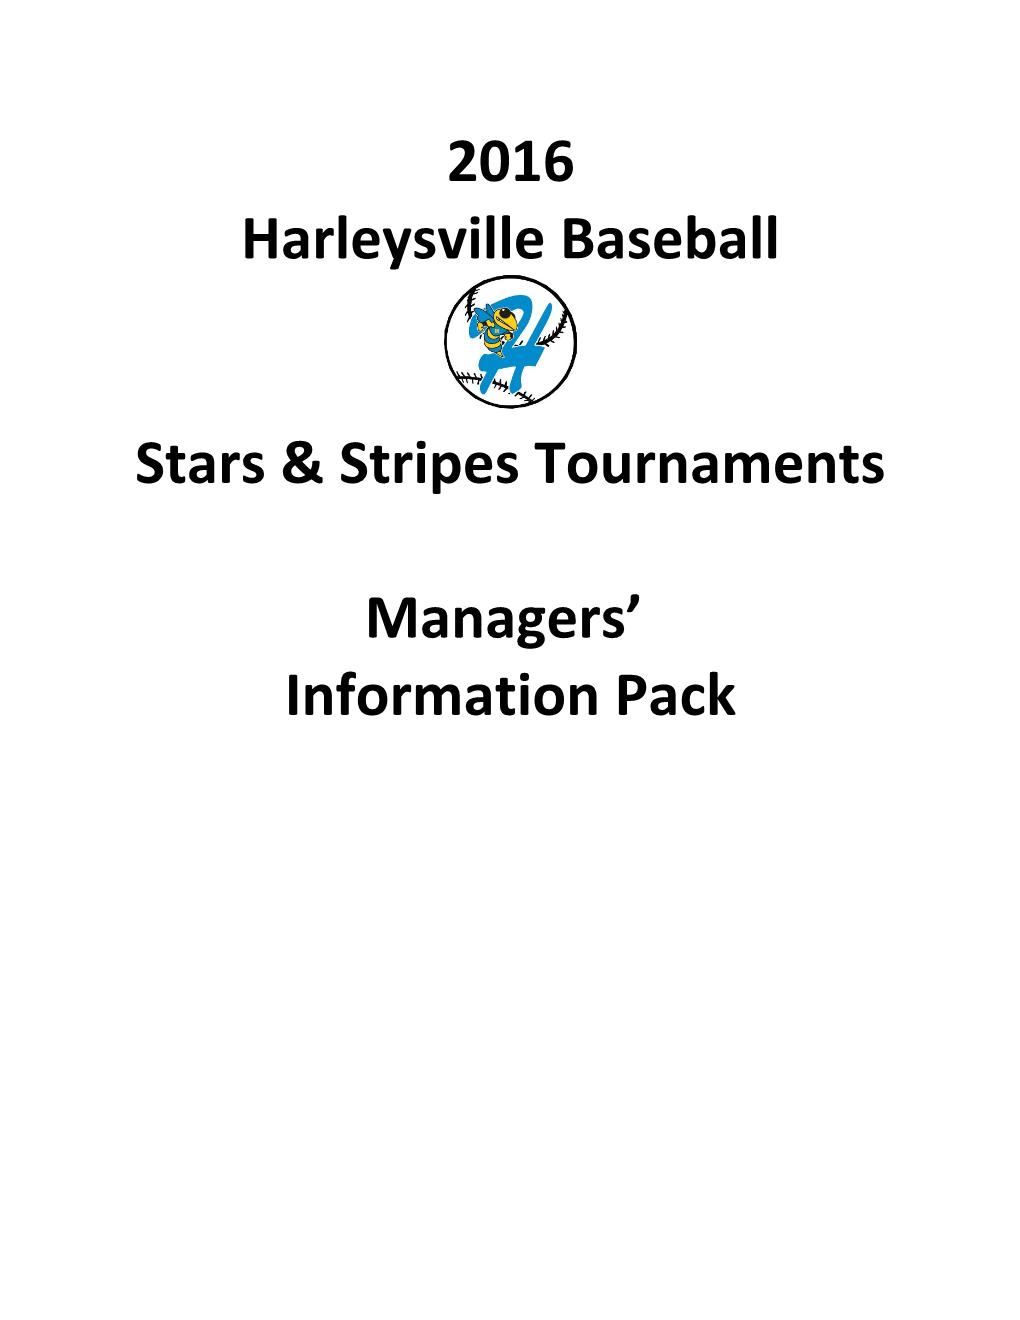 2016 Harleysville Baseball: Stars & Stripes Tournament